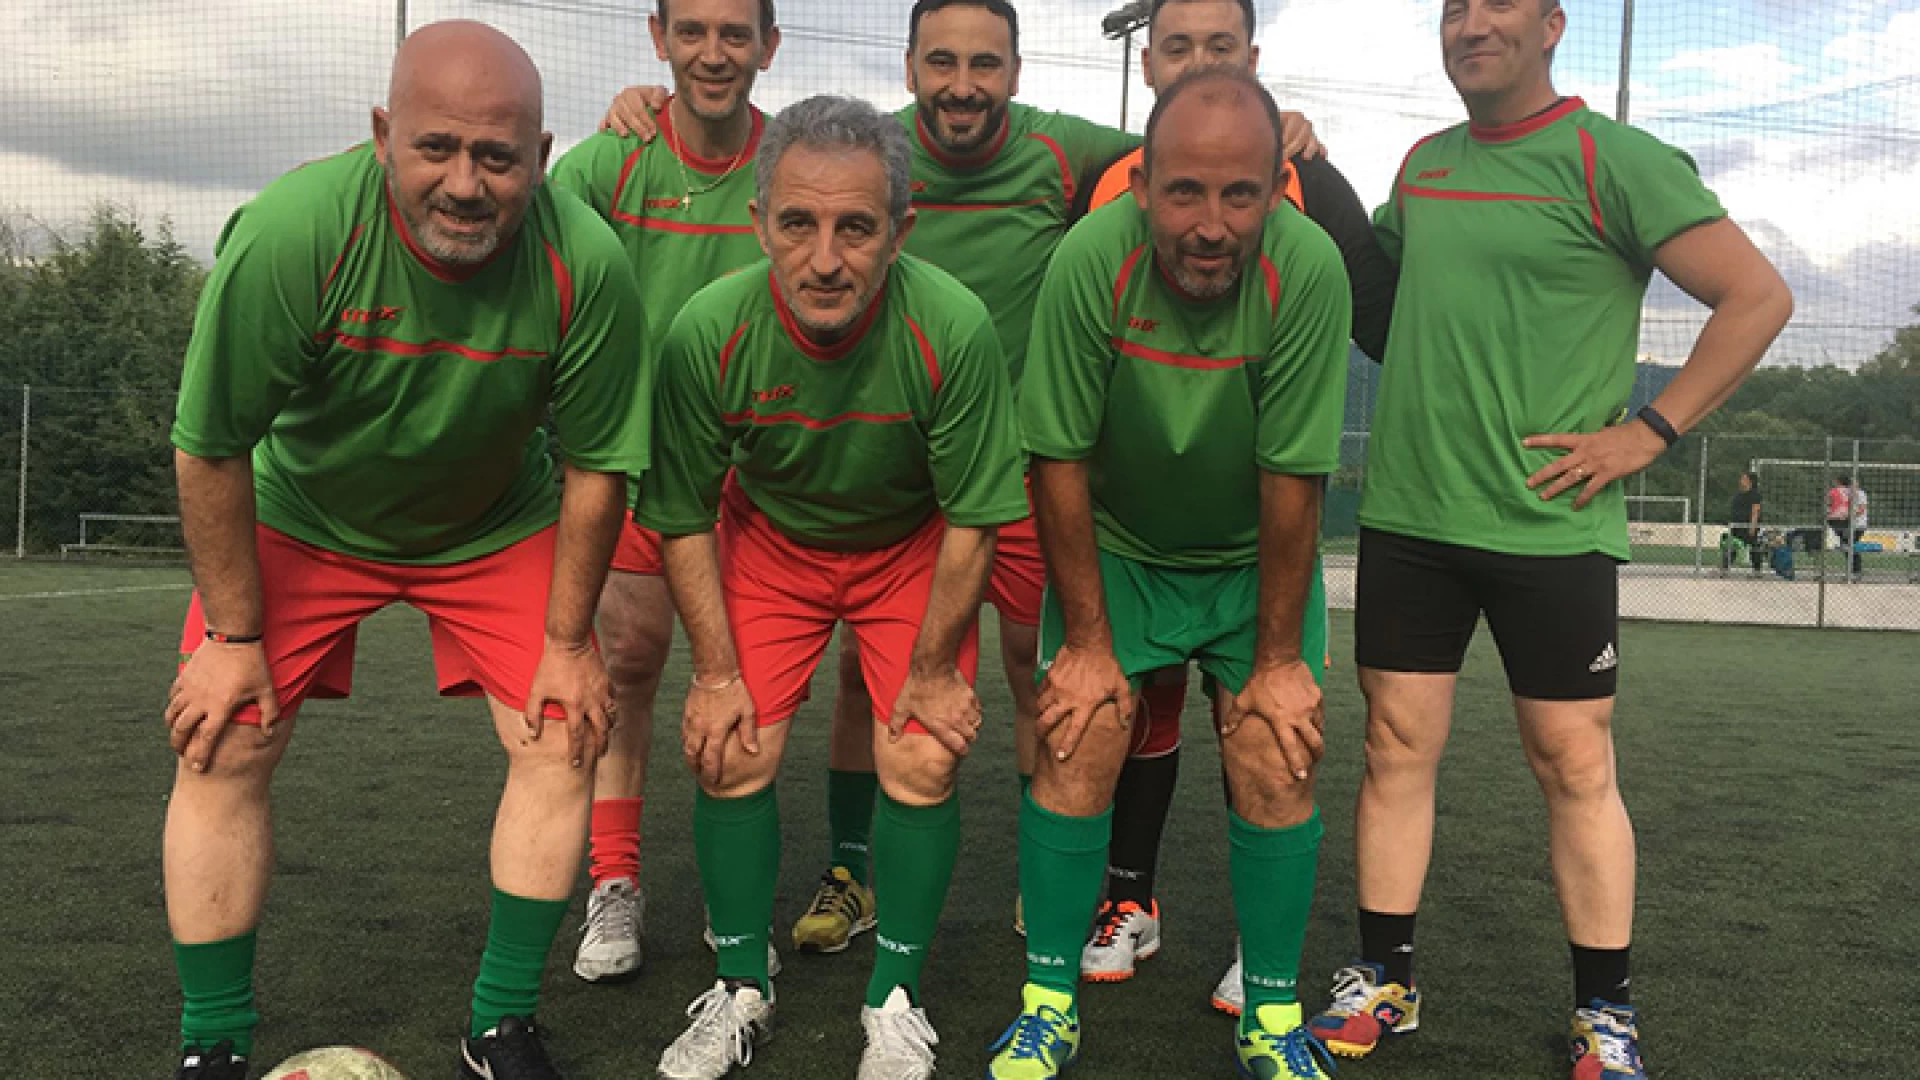 Calcio a 8: la Pininho Team sfodera una prestazione di livello contro l’Isernia Time. Il capitano Pino Fiore elogia i suoi uomini per il grande impegno messo in campo.